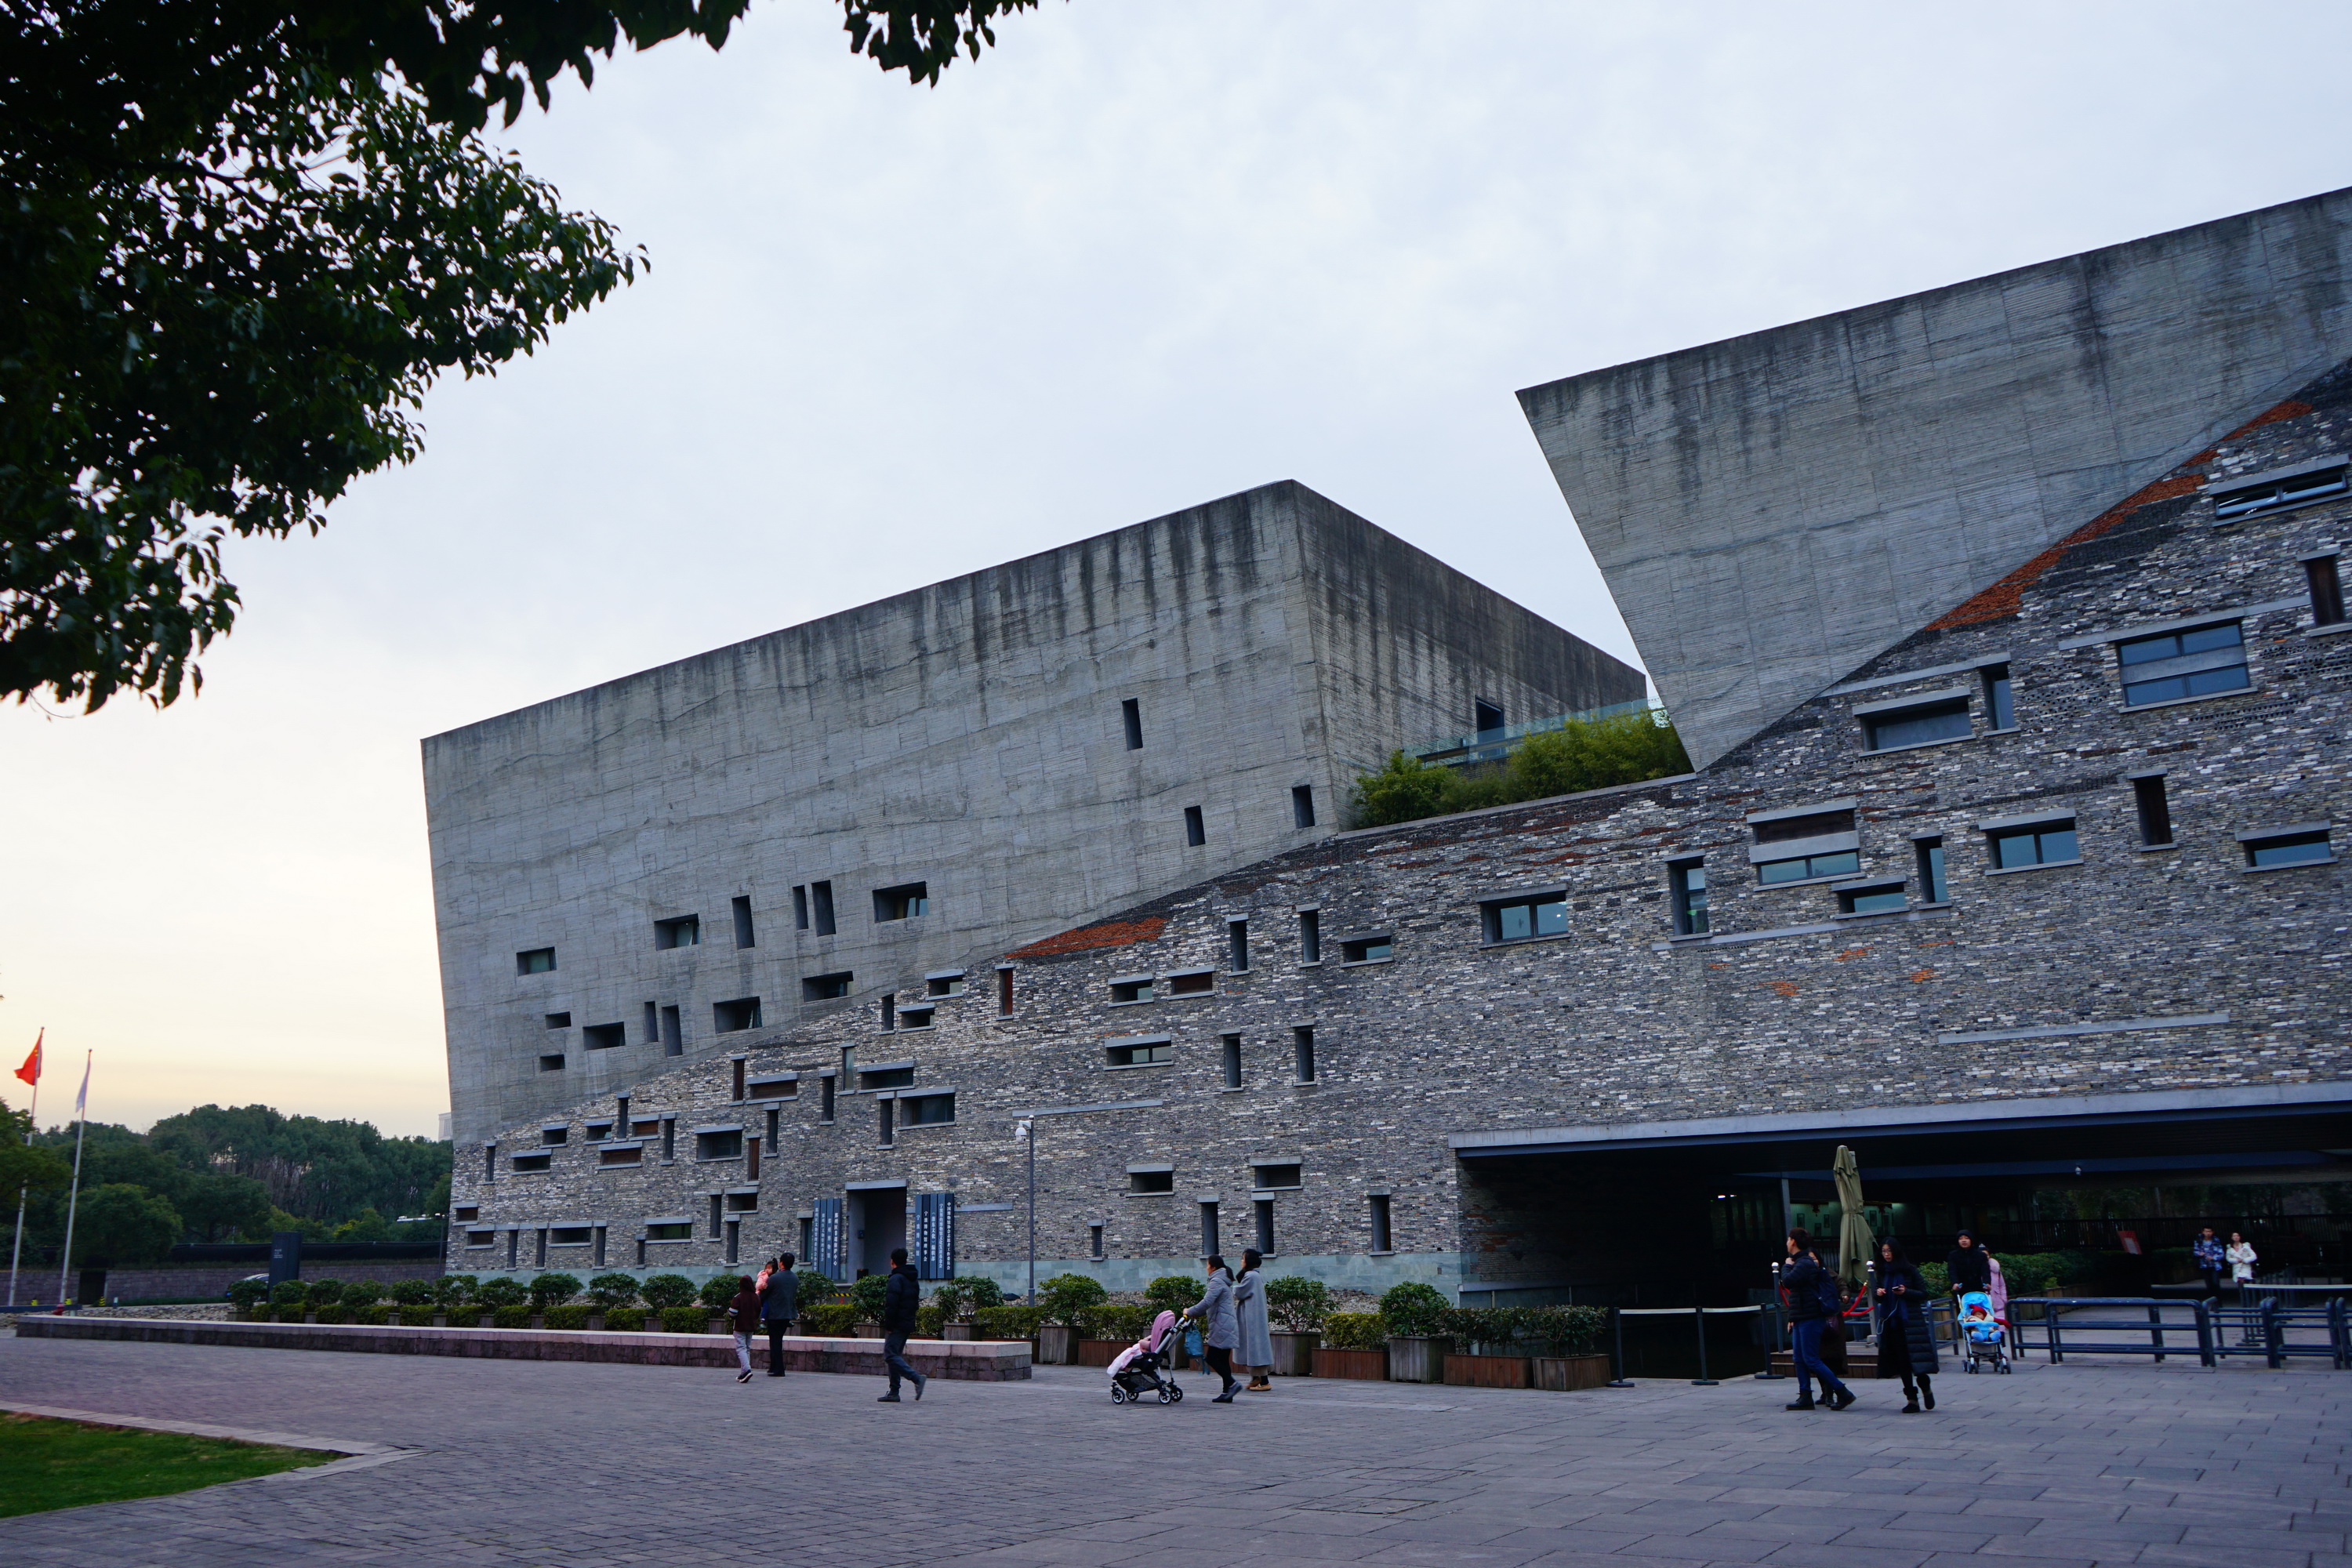 宁波博物馆:牛人设计的别具一格建筑